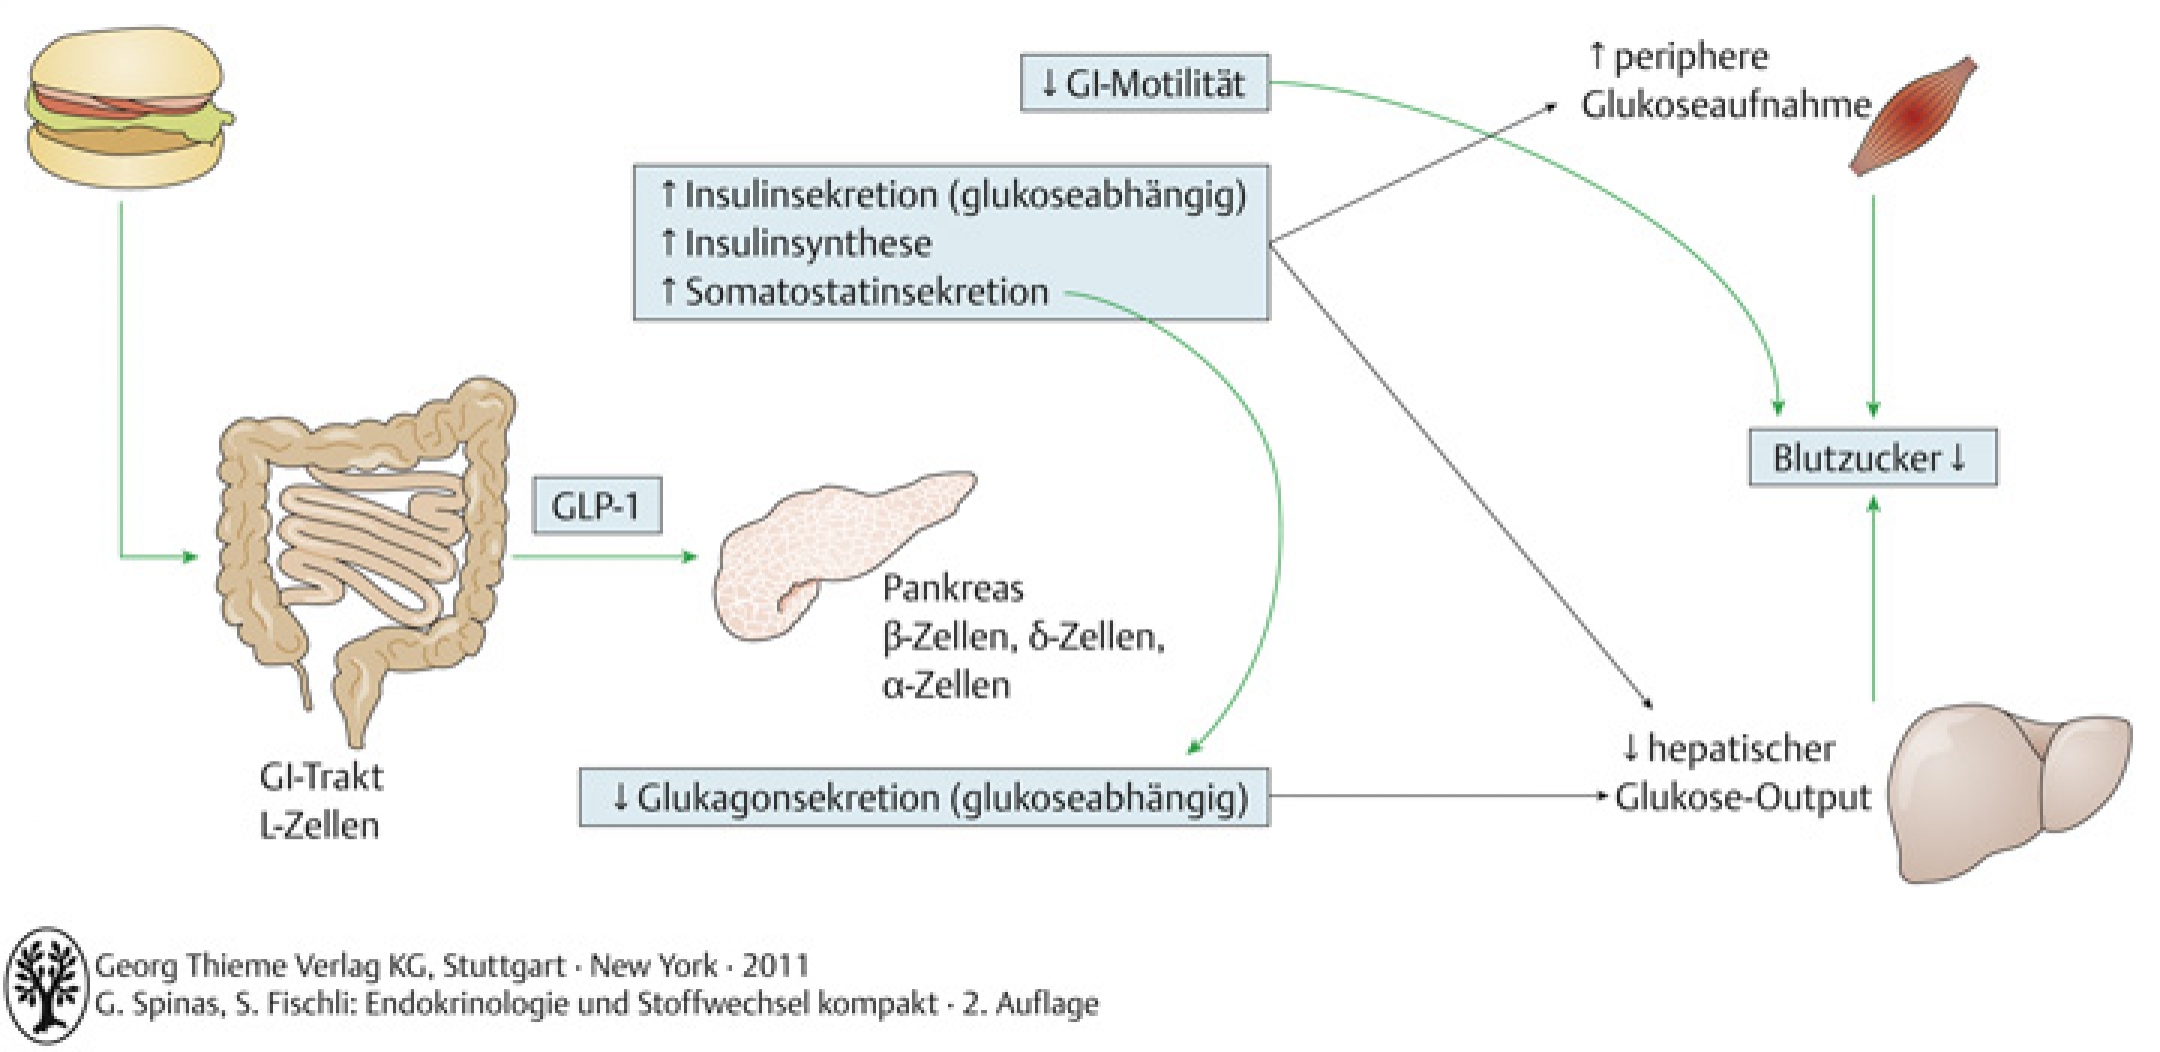 Physiologische Effekte der Inkretine am Beispiel von GLP-1 (nach Brubaker & Drucker 2004)